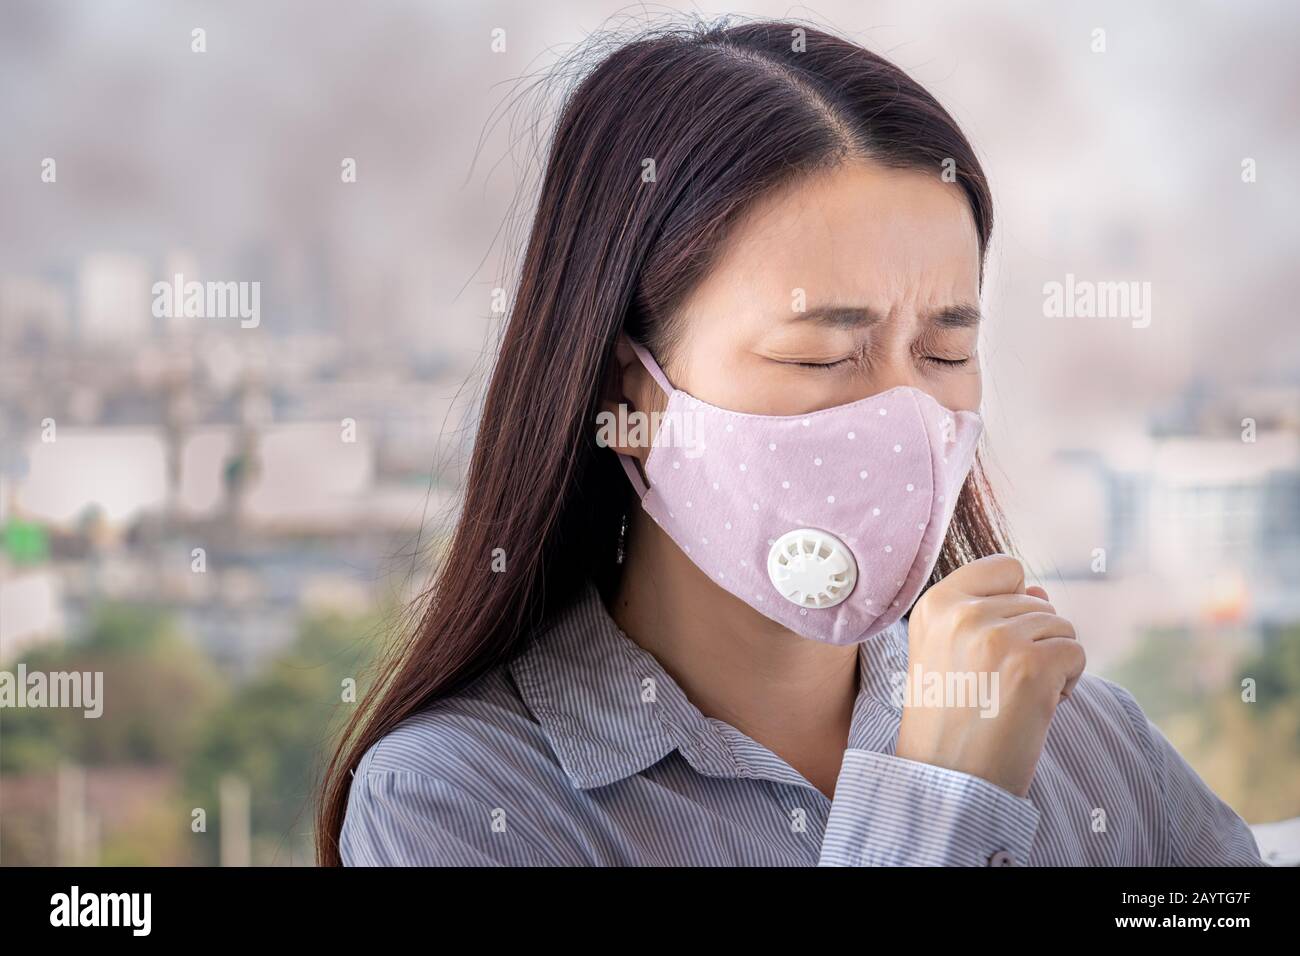 PM2.5. Menschen, die sich durch Luftverschmutzung krank fühlen, haben schädliche oder giftige Auswirkungen. Frau in der Stadt trägt Gesichtsmaske, um sich selbst zu schützen Stockfoto